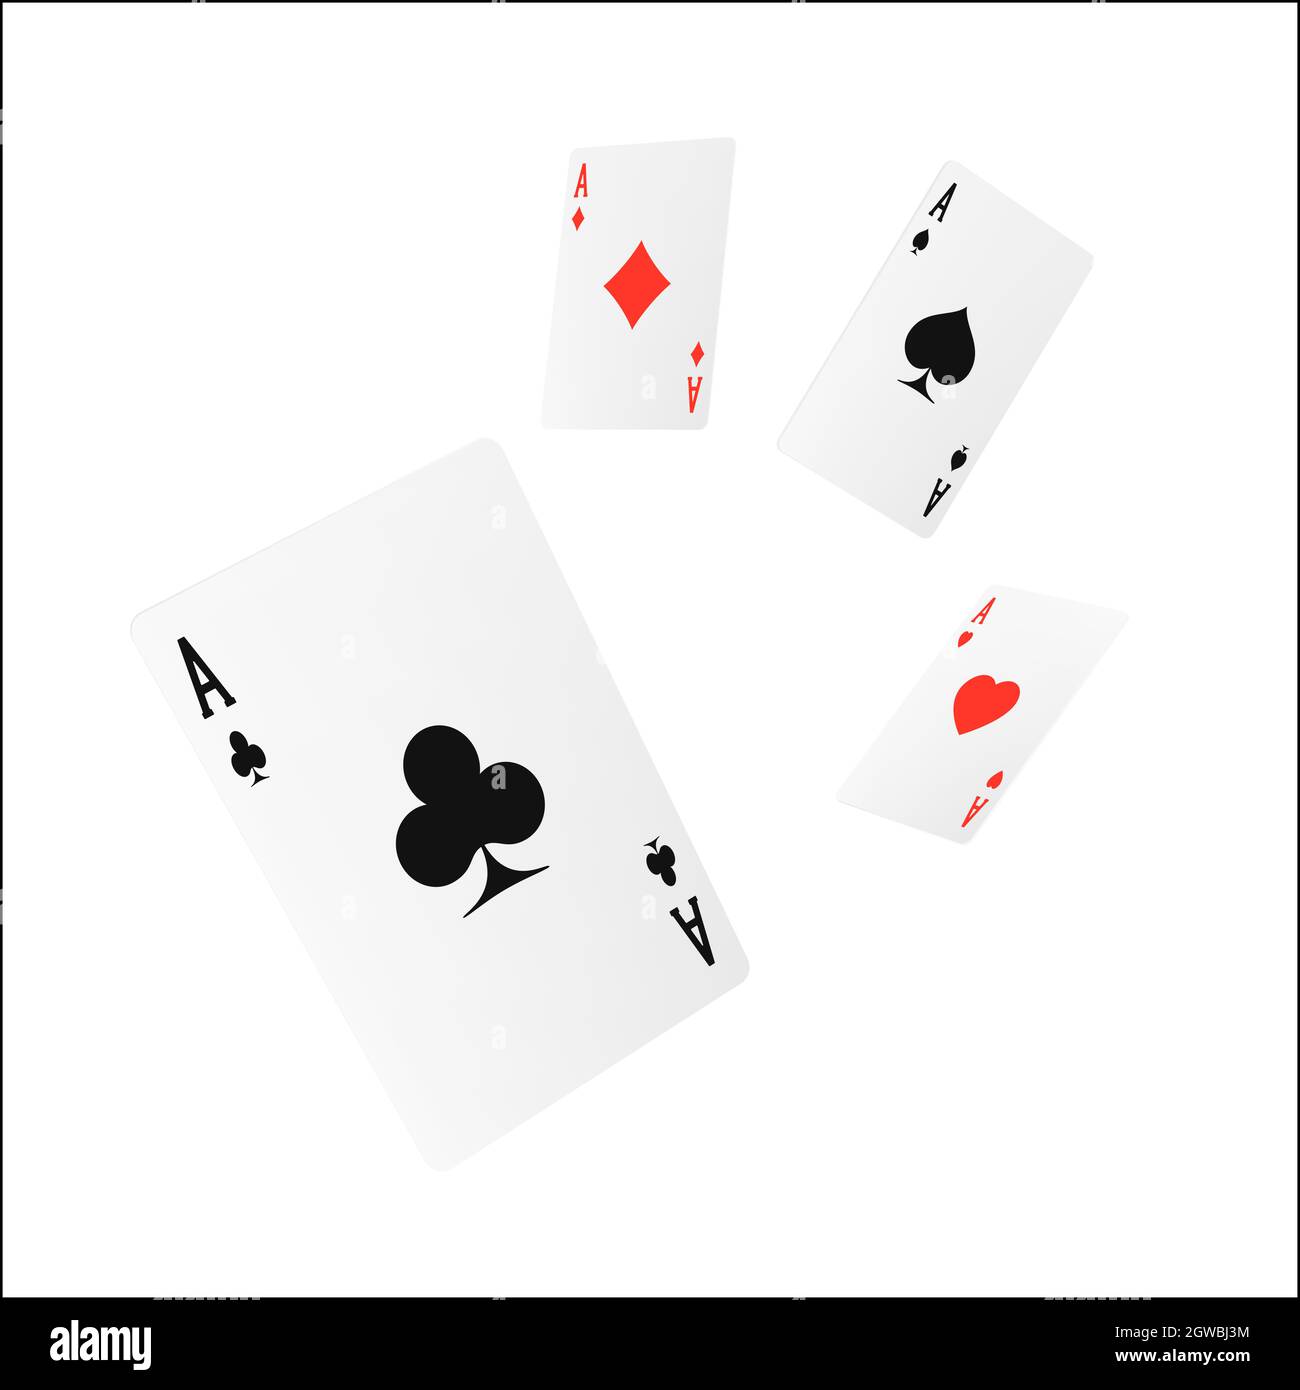 Fliegende Spielkarte Vierling oder Vierer. ACE Design Cazino Spiel Element. Poker oder Blackjack realistische Karten. Vektorgrafik Stock Vektor